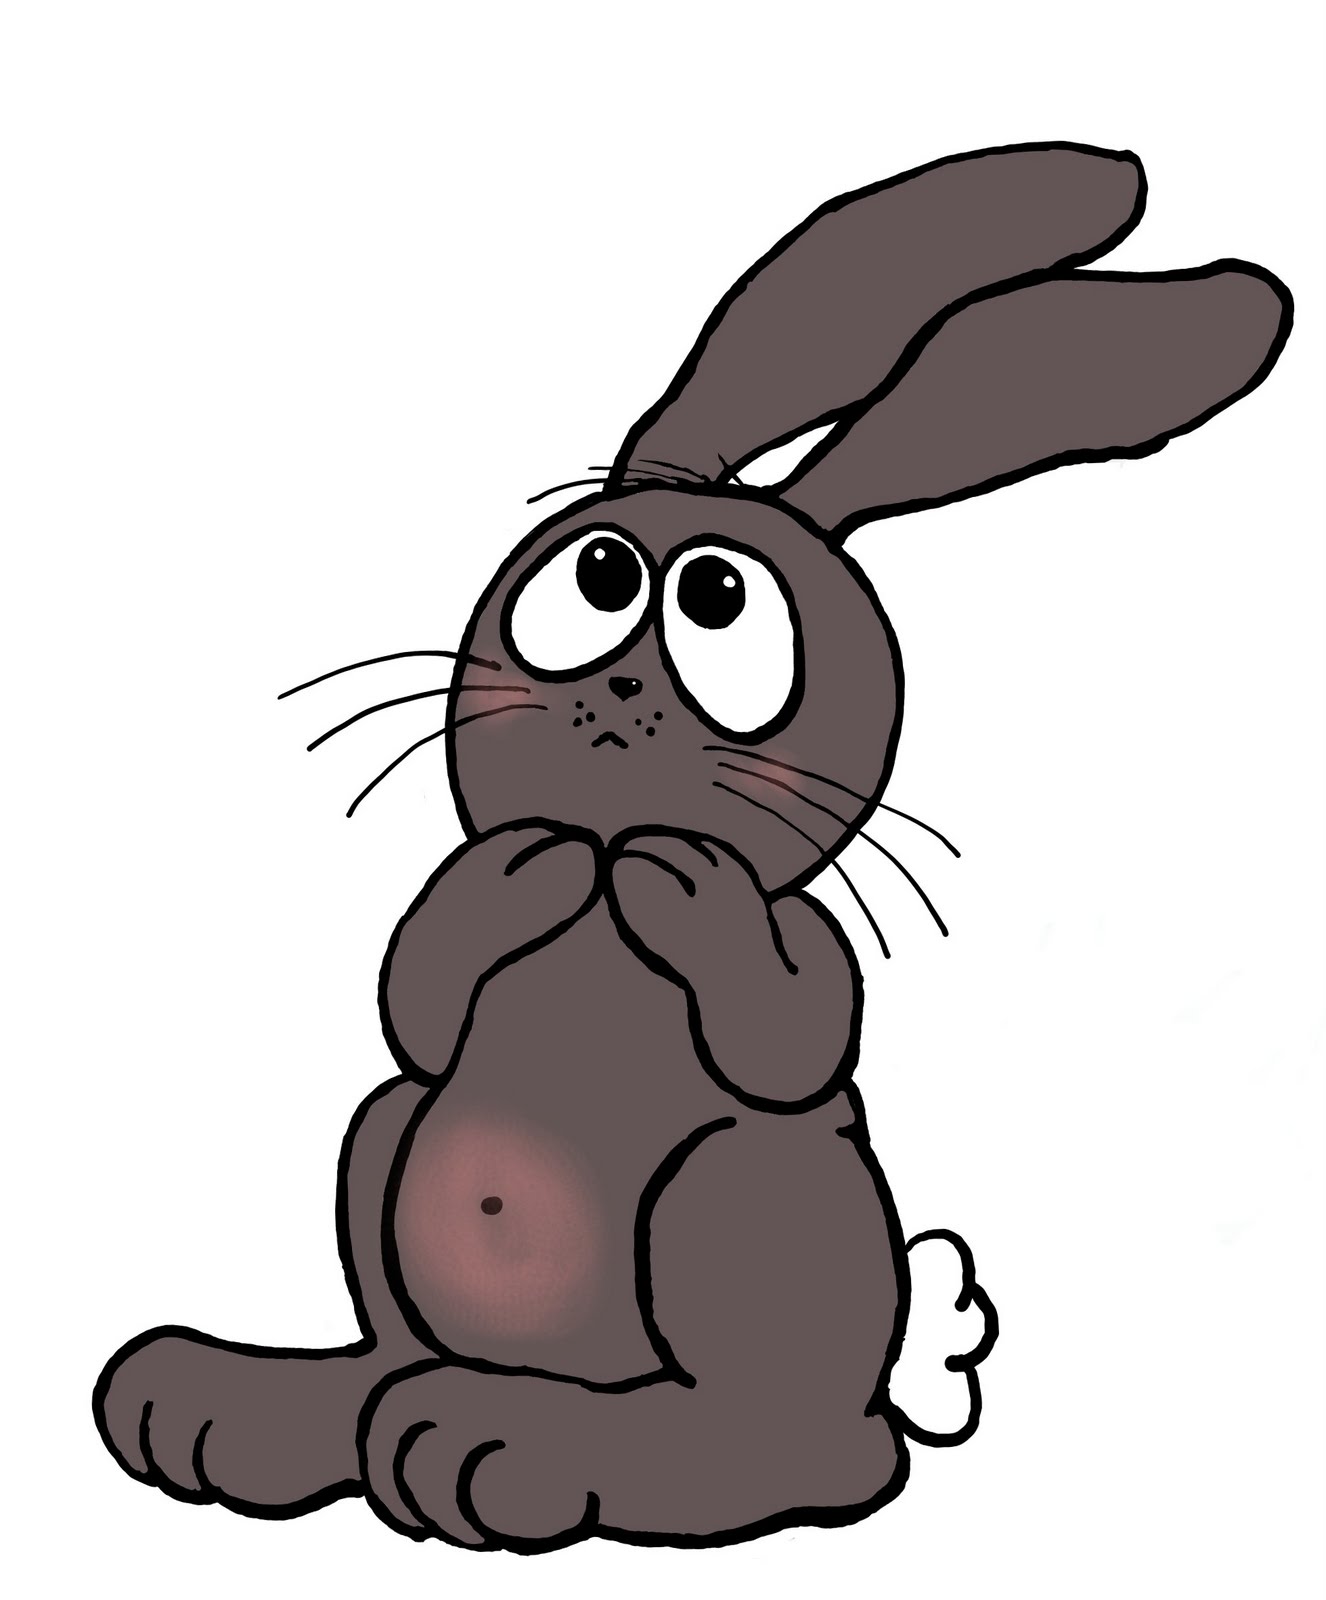 Cartoon Rabbit Images | Free Download Clip Art | Free Clip Art ...